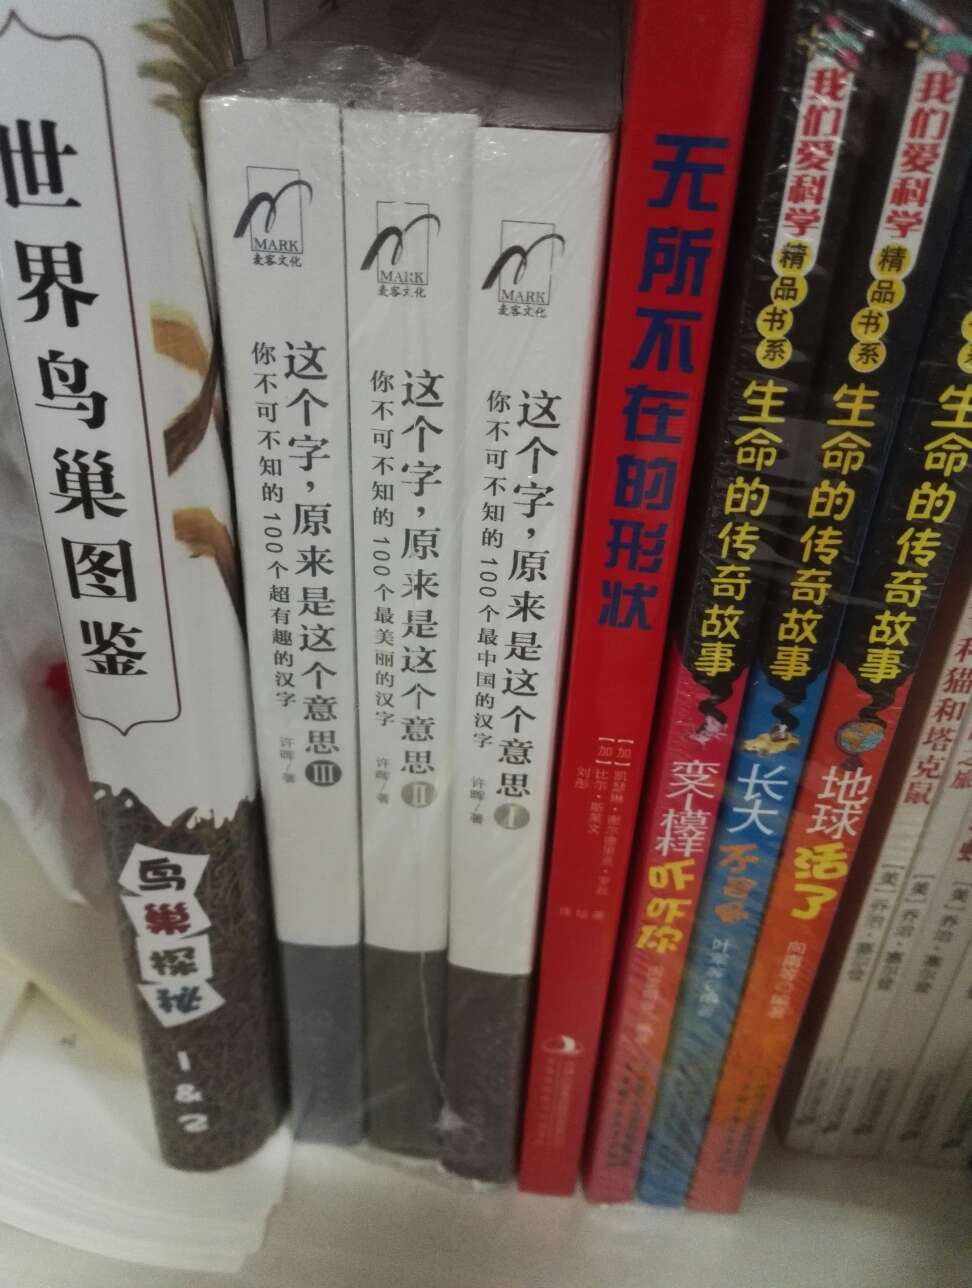 这是三本专谈汉字趣闻、掌故的书。每本书所遴选的100个汉字，都是我们所常见的汉字，如“兵”“中”“寺”“社”等。